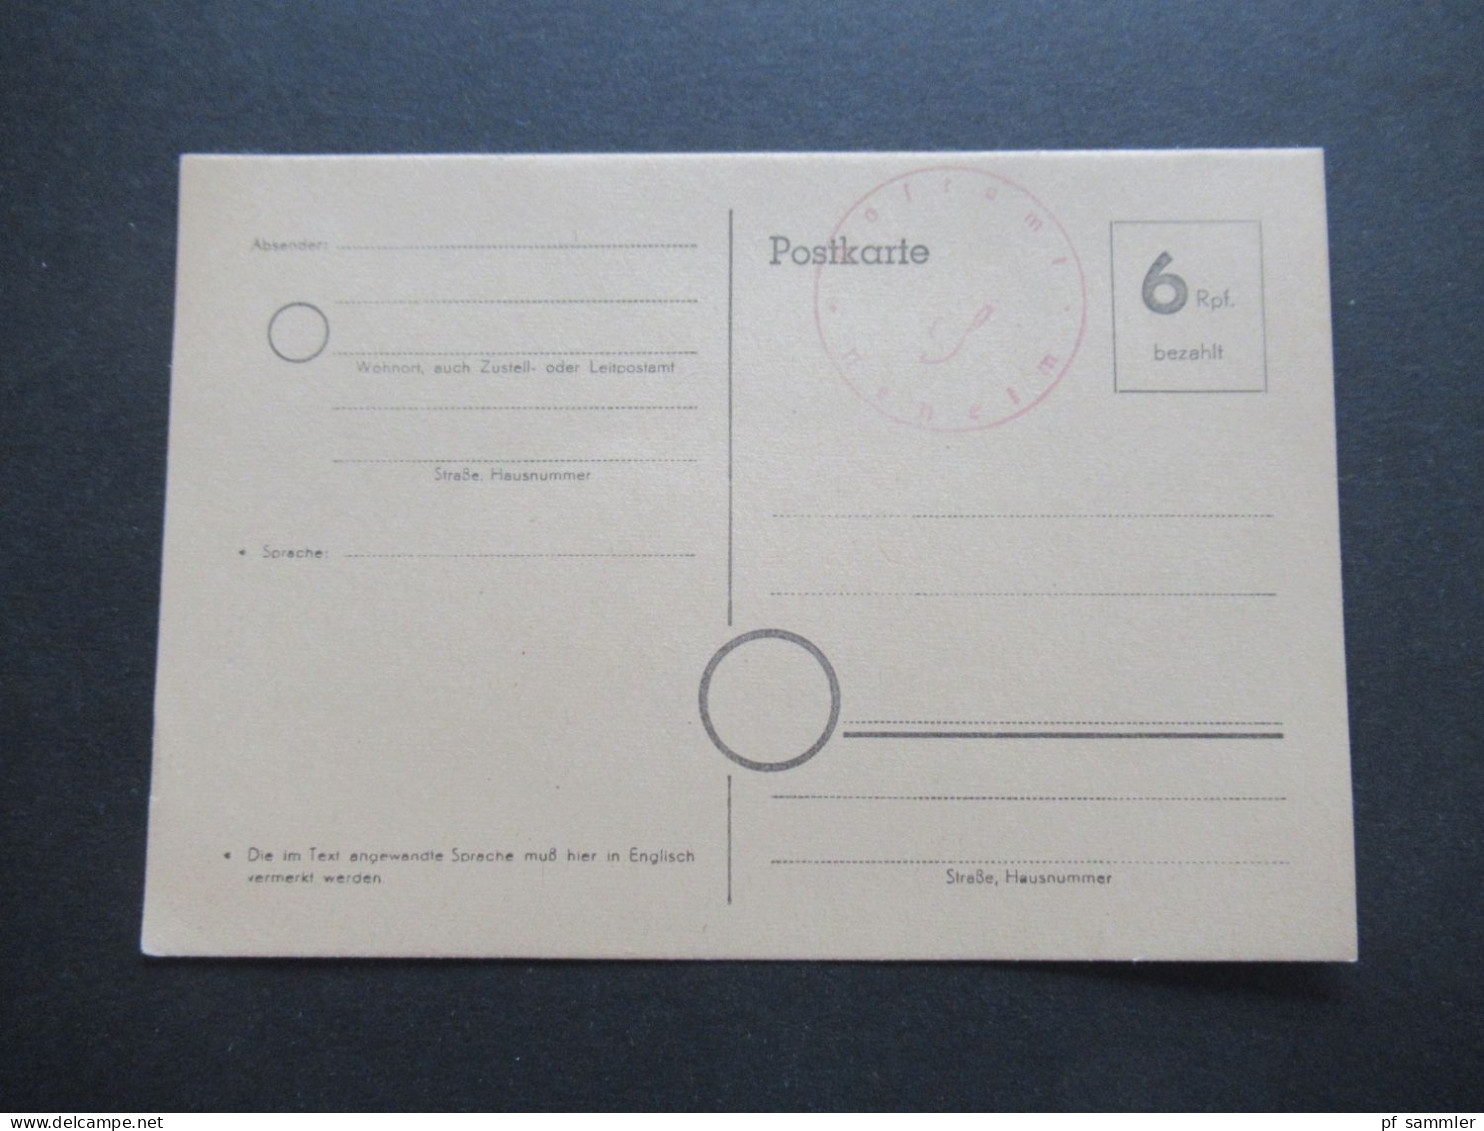 Bizone Behelfsausgabe Ganzsache 6 Rpf. Bezahlt Und Stempel Postamt Neheim / Ungebraucht / 1945 / 1946 - Behelfsausgaben Britische Zone